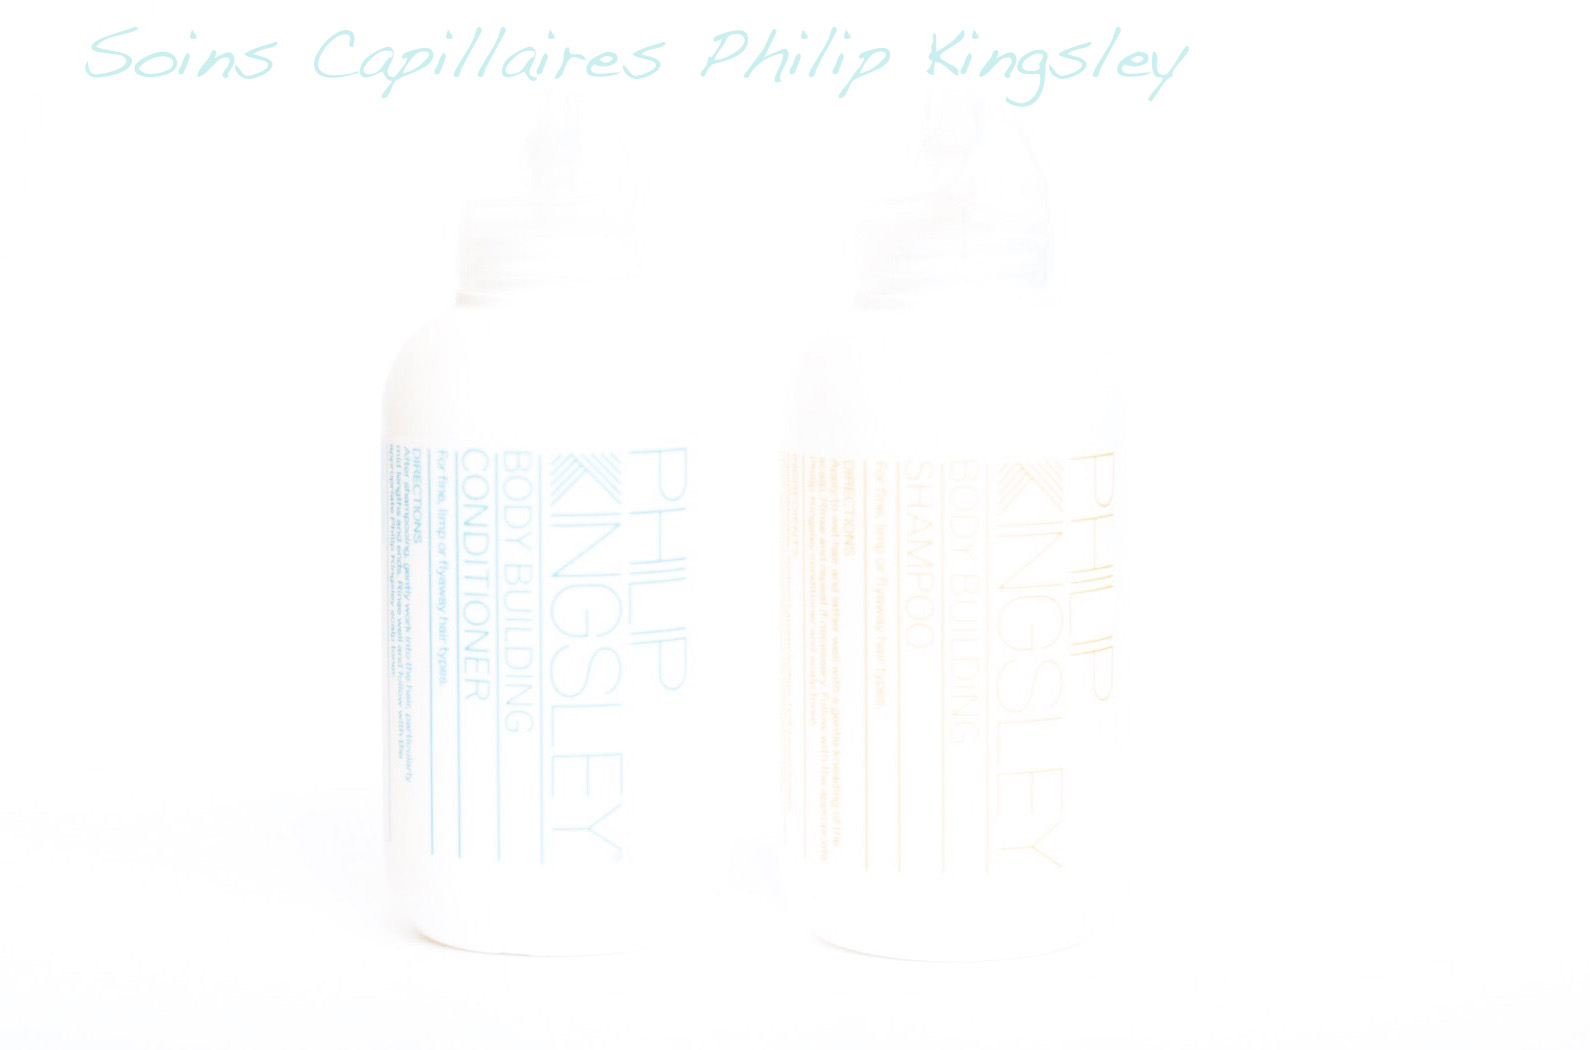 capillaires philip kingsley avis test